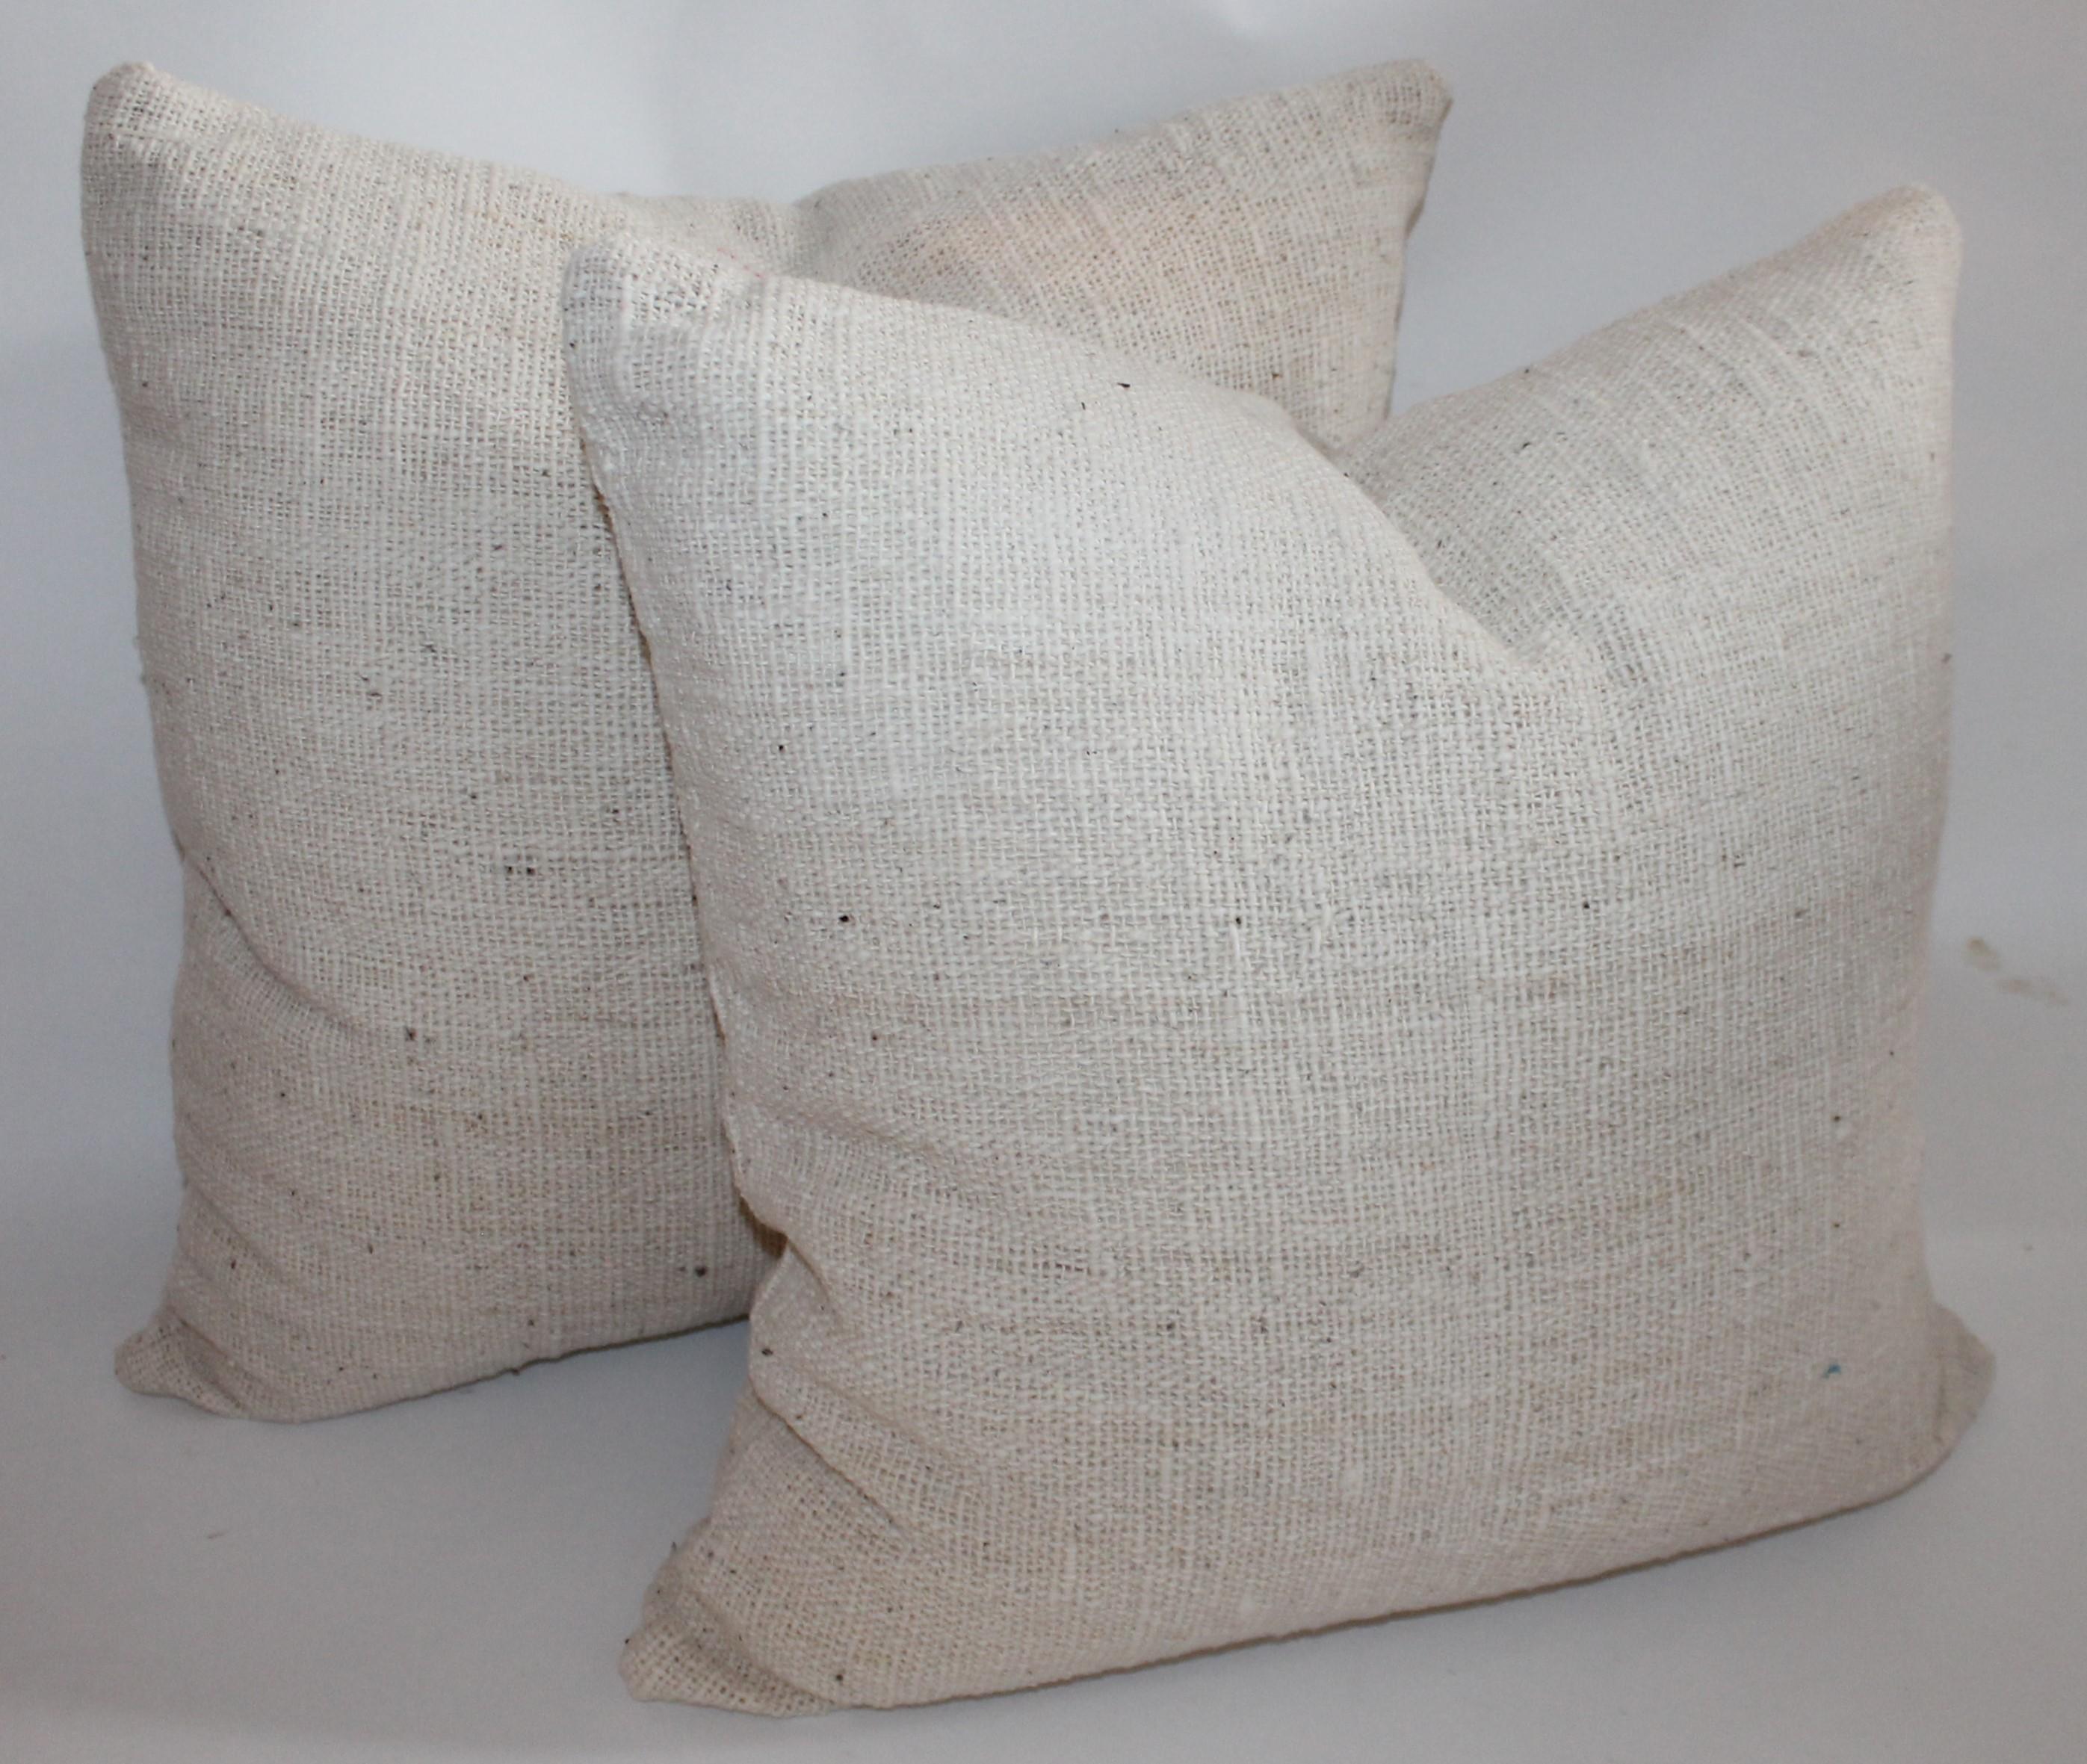 Country Reversible Home Spun Linen Pillows, 4 Pillows For Sale